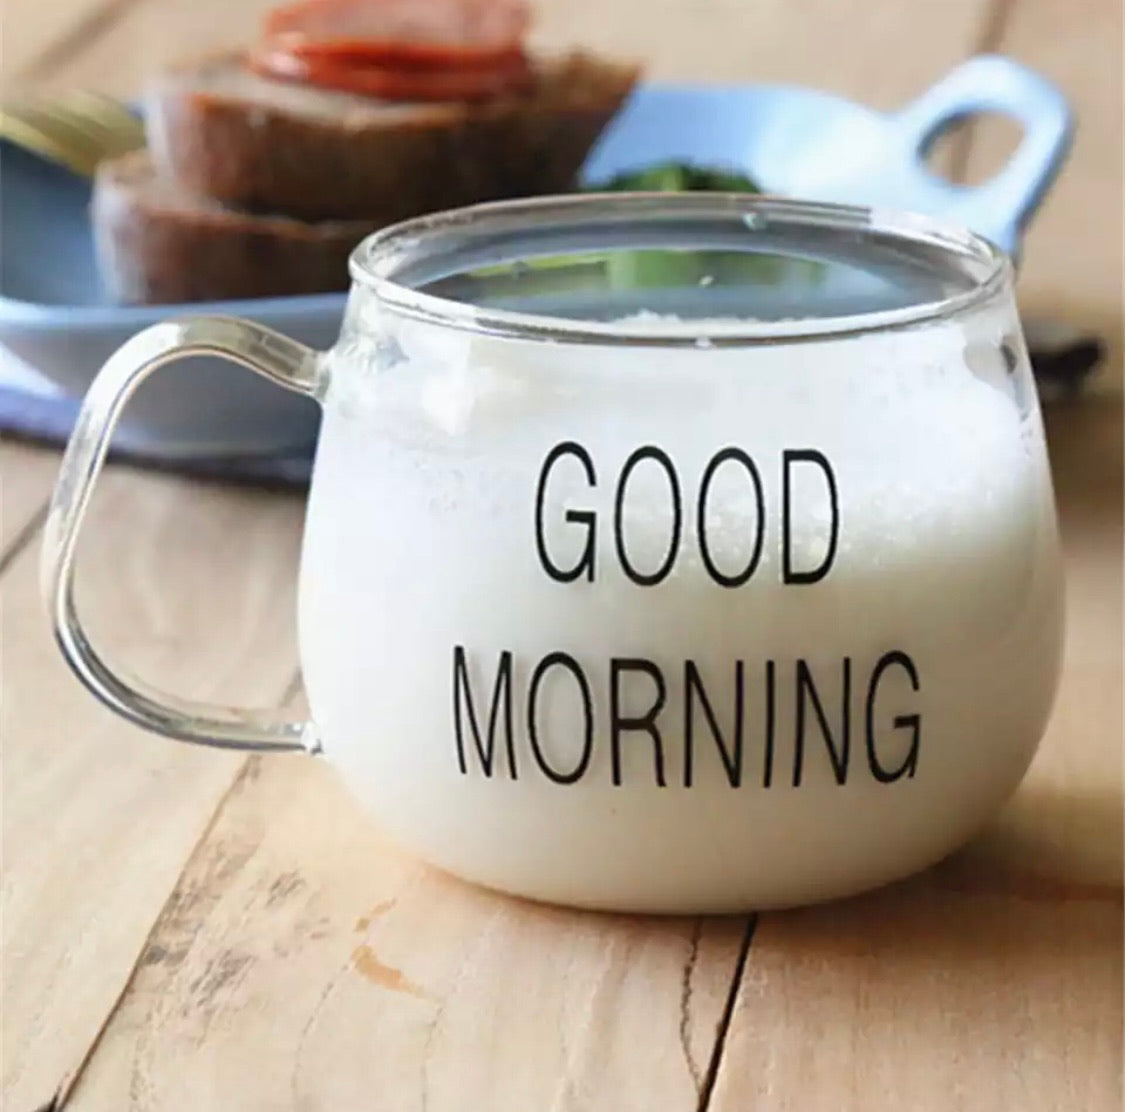 Good Morning Glass Mug